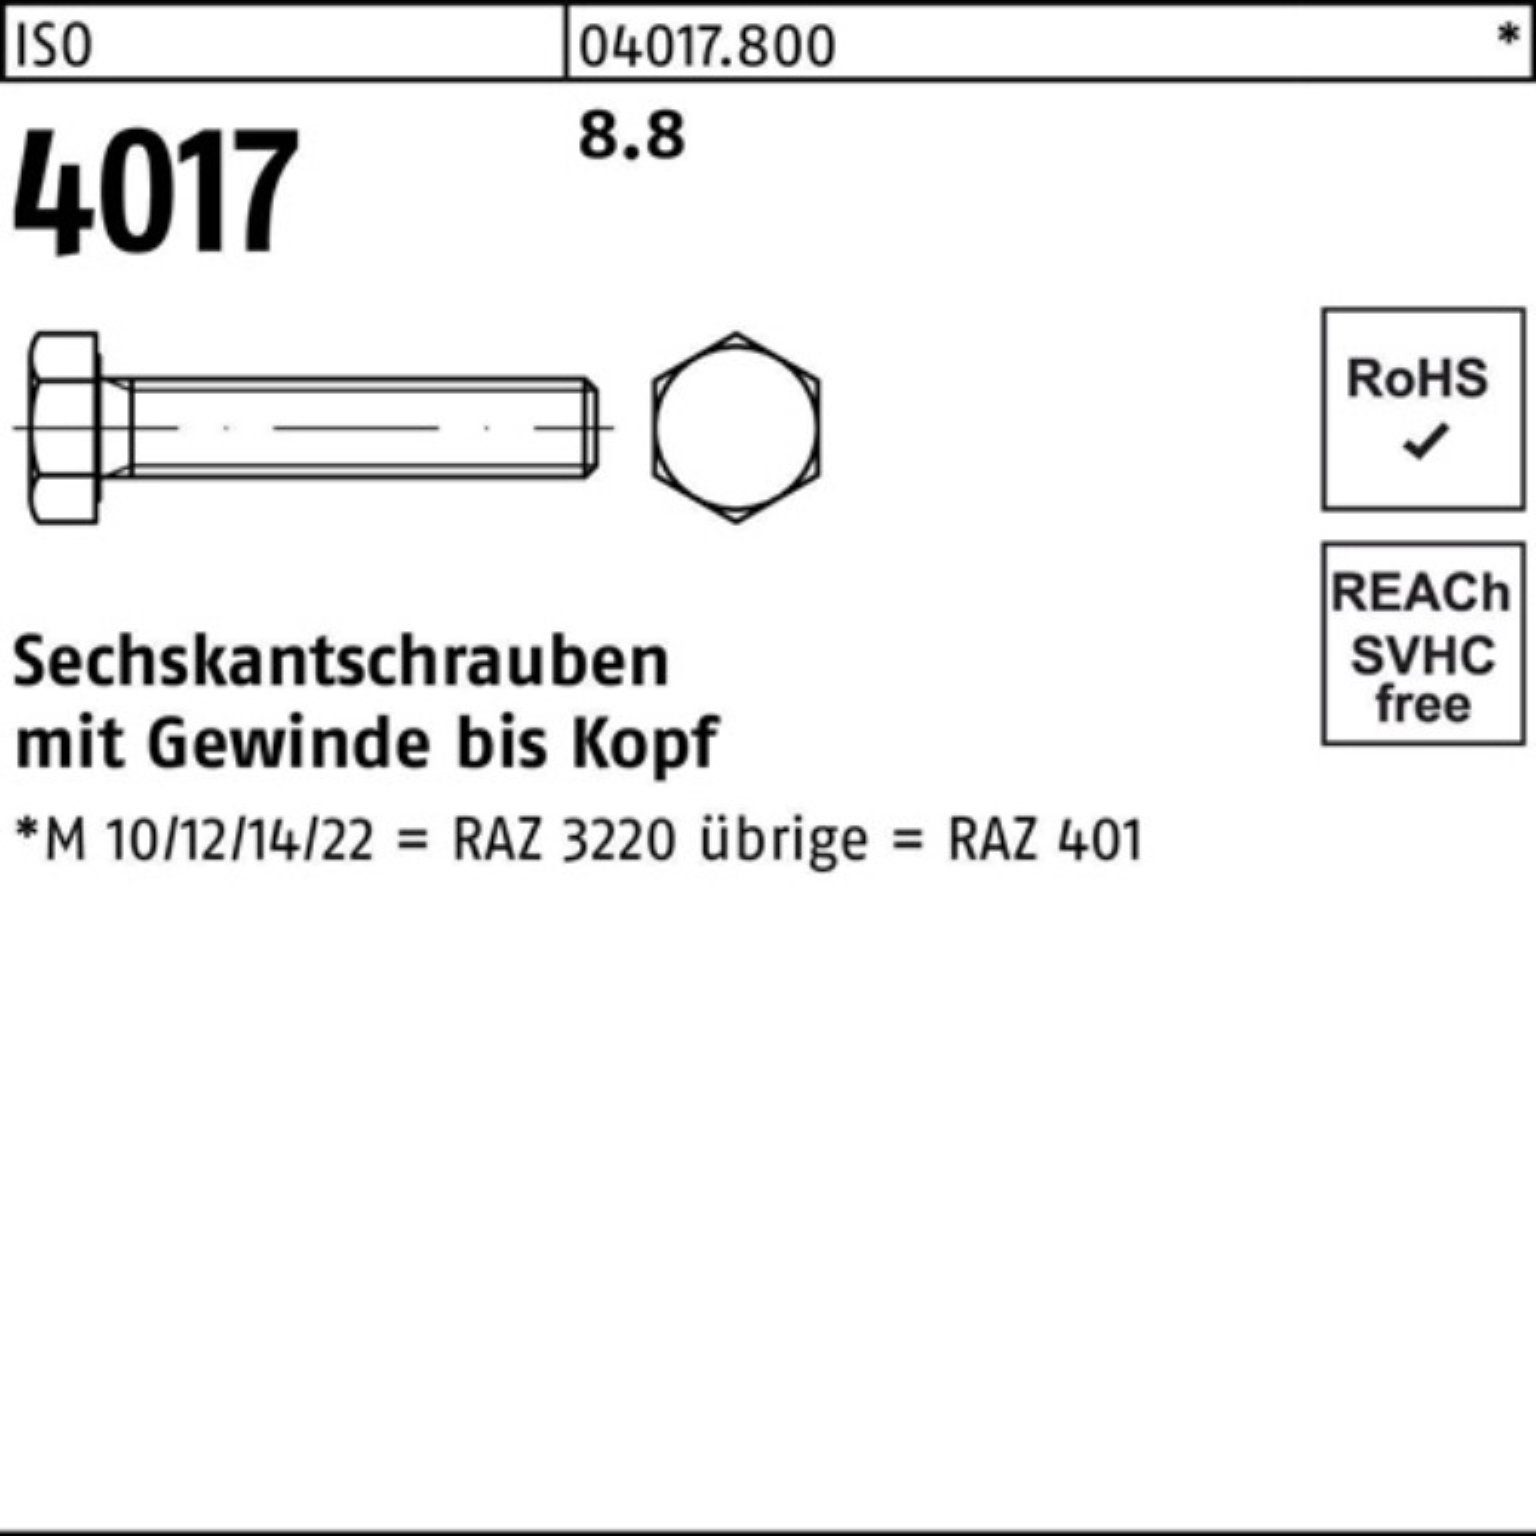 Bufab Sechskantschraube 500er Pack 500 Sechskantschraube 60 Stück VG 4017 ISO ISO M3x 401 8.8